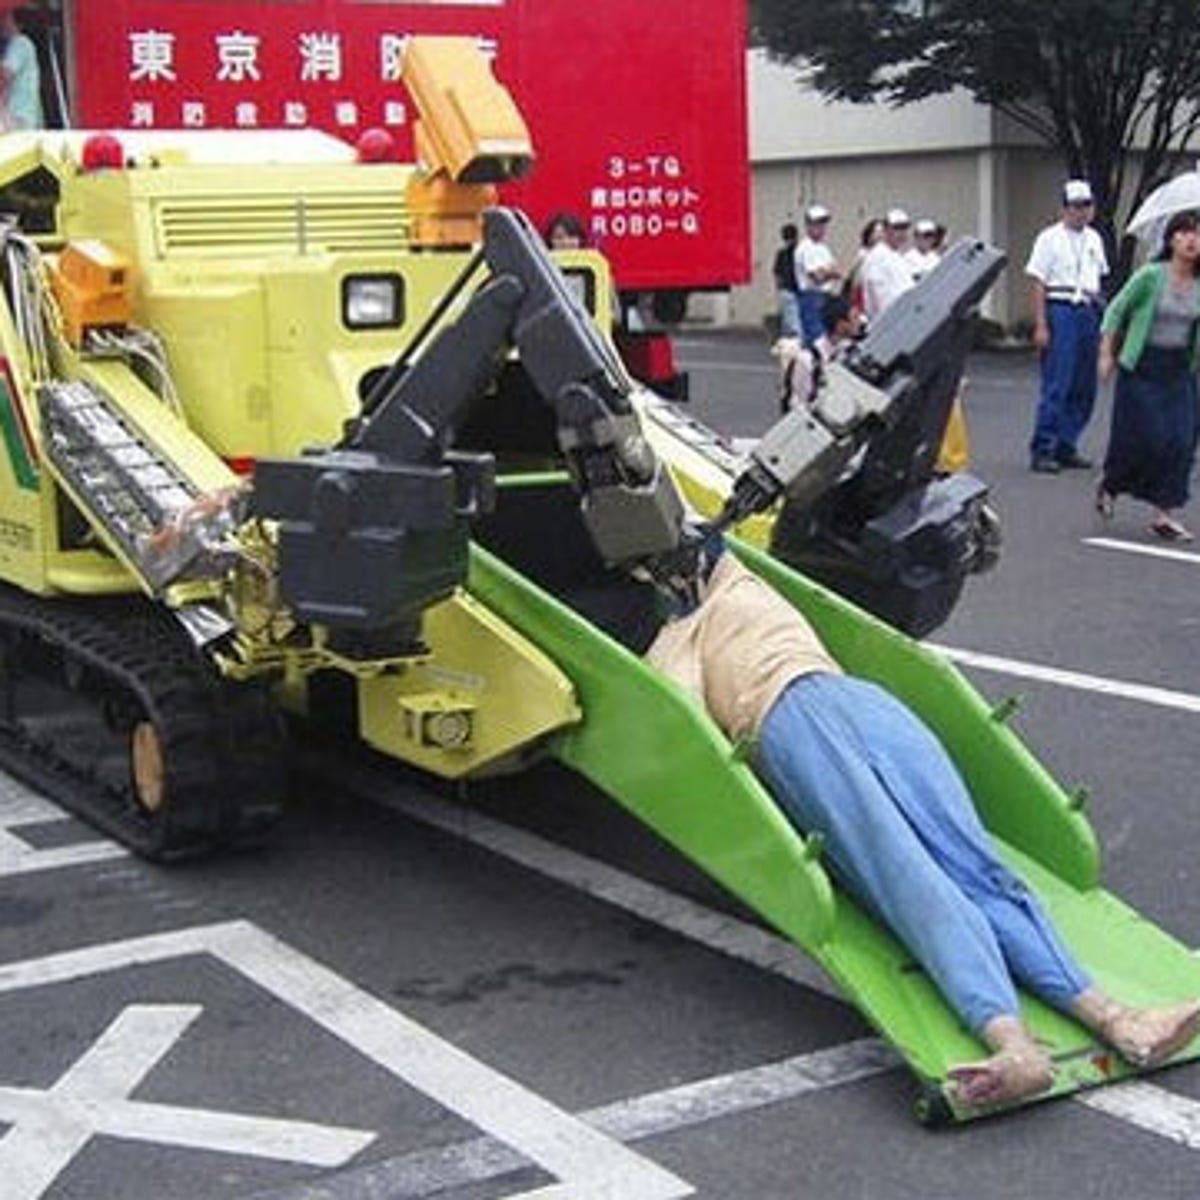 Роботы для обеспечения безопасности. Робот спасатель. Роботы для спасения. Пожарный робот. Спасательные роботы в Японии.